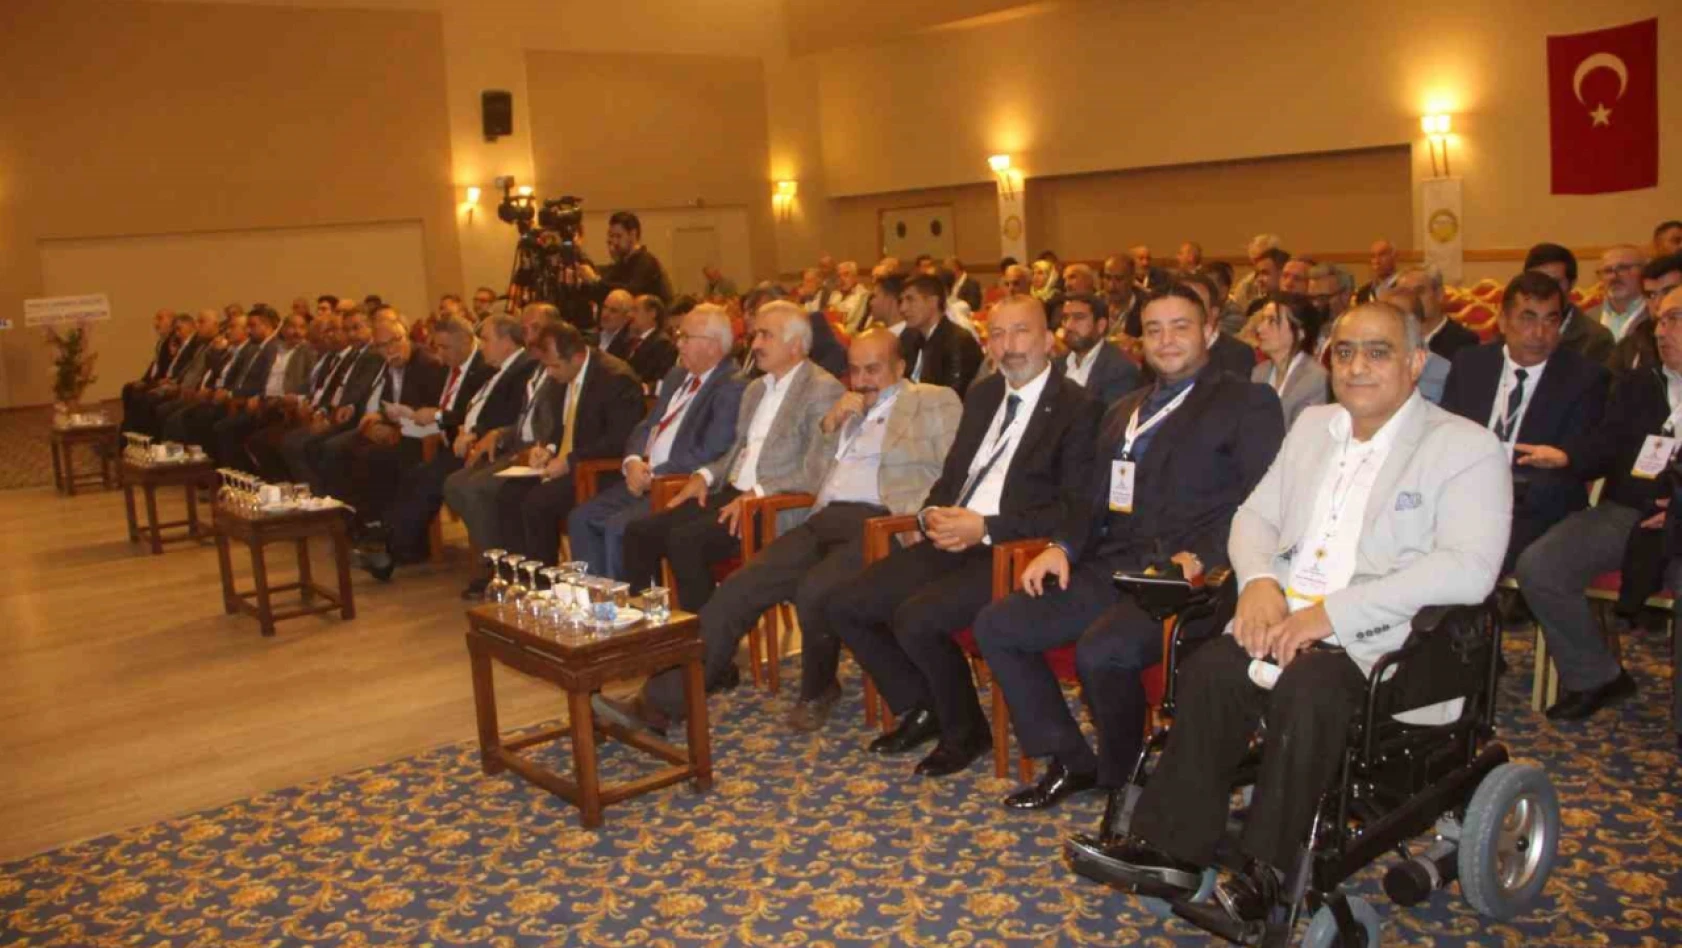 Elazığ'da 2. Geven Balı Çalıştayı gerçekleştirildi